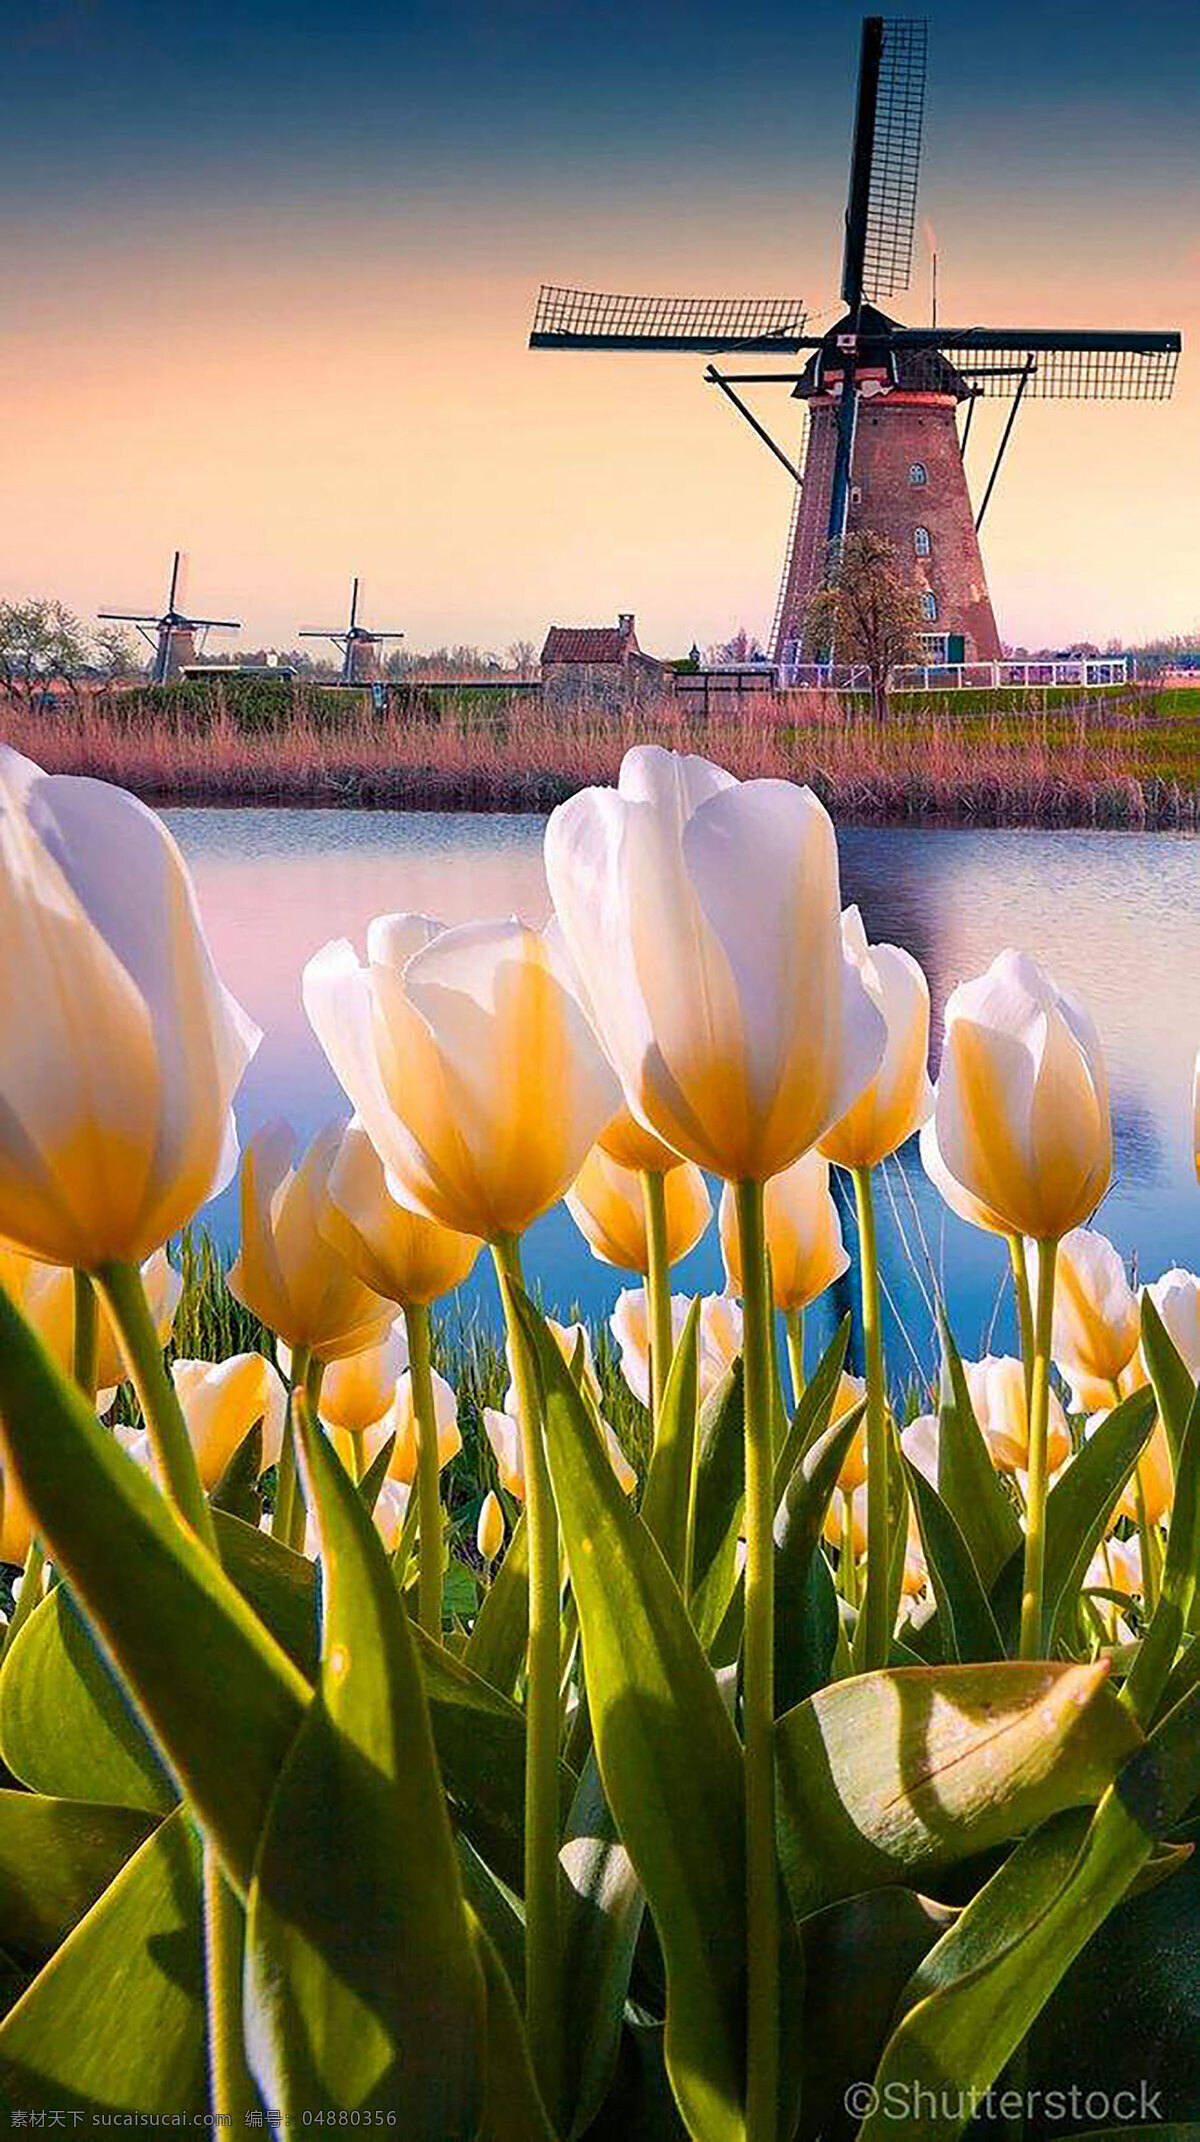 荷兰郁金香 郁金香 浪漫 荷兰 爱情 美好 象征 风景 旅游摄影 国外旅游